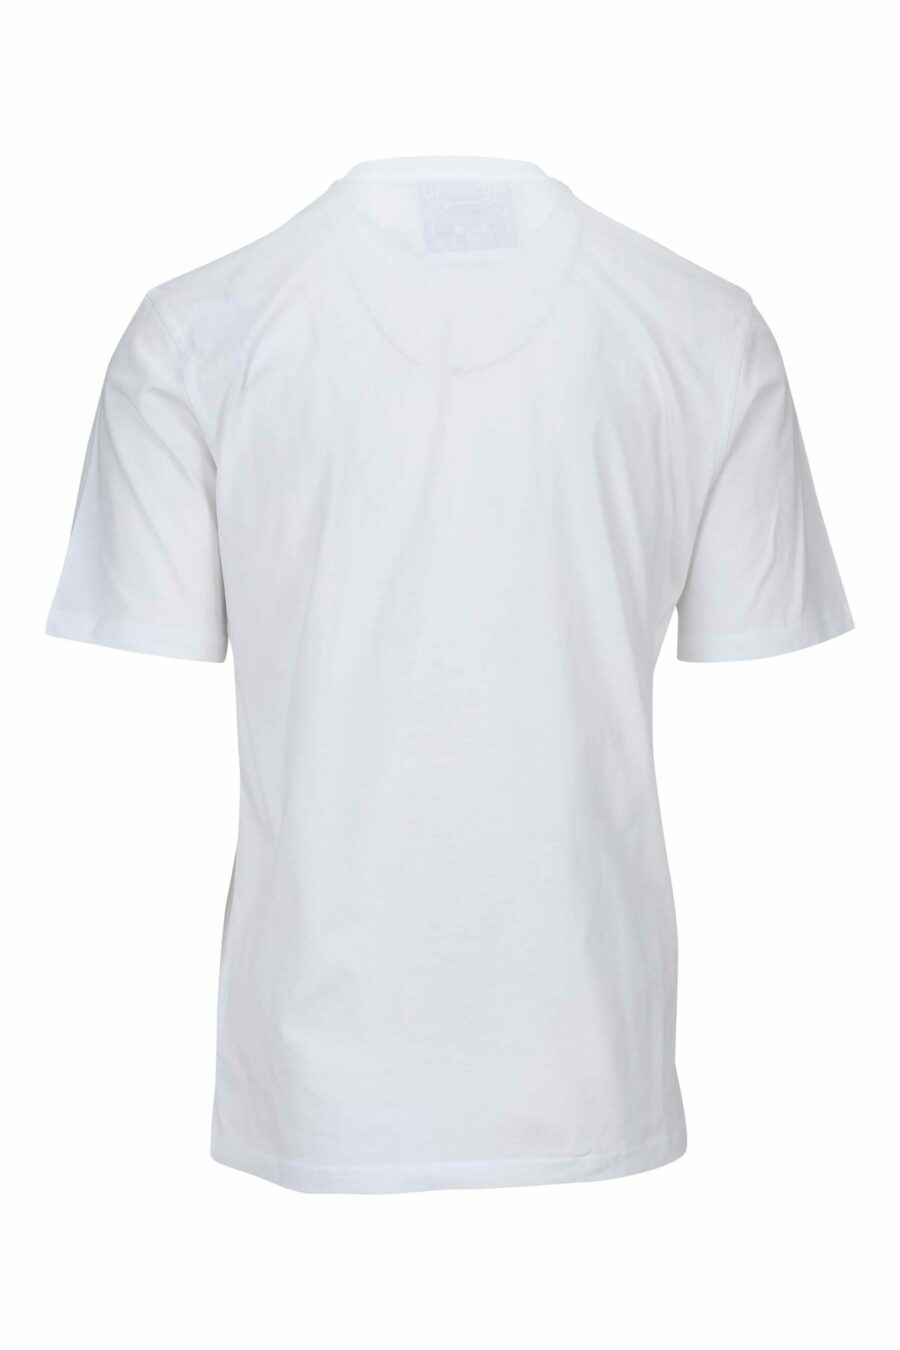 T-shirt blanc avec maxilogo ours monochrome à pois - 667113455617 1 scaled